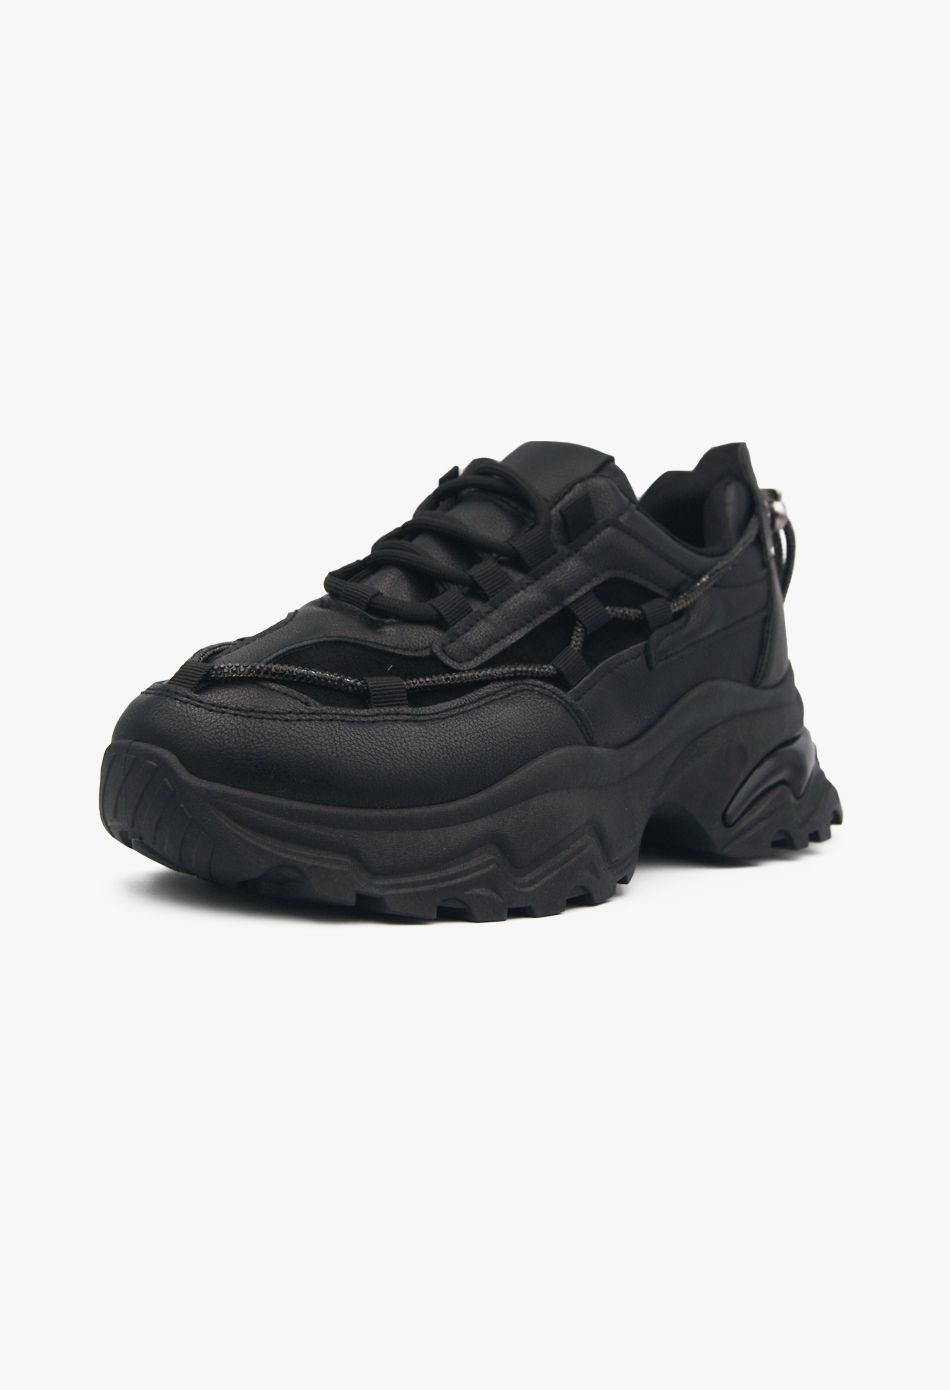 Γυναικείο Αθλητικό Chunky Sneaker με Strass Μαύρο / C2120-black Γυναικεία Αθλητικά και Sneakers joya.gr